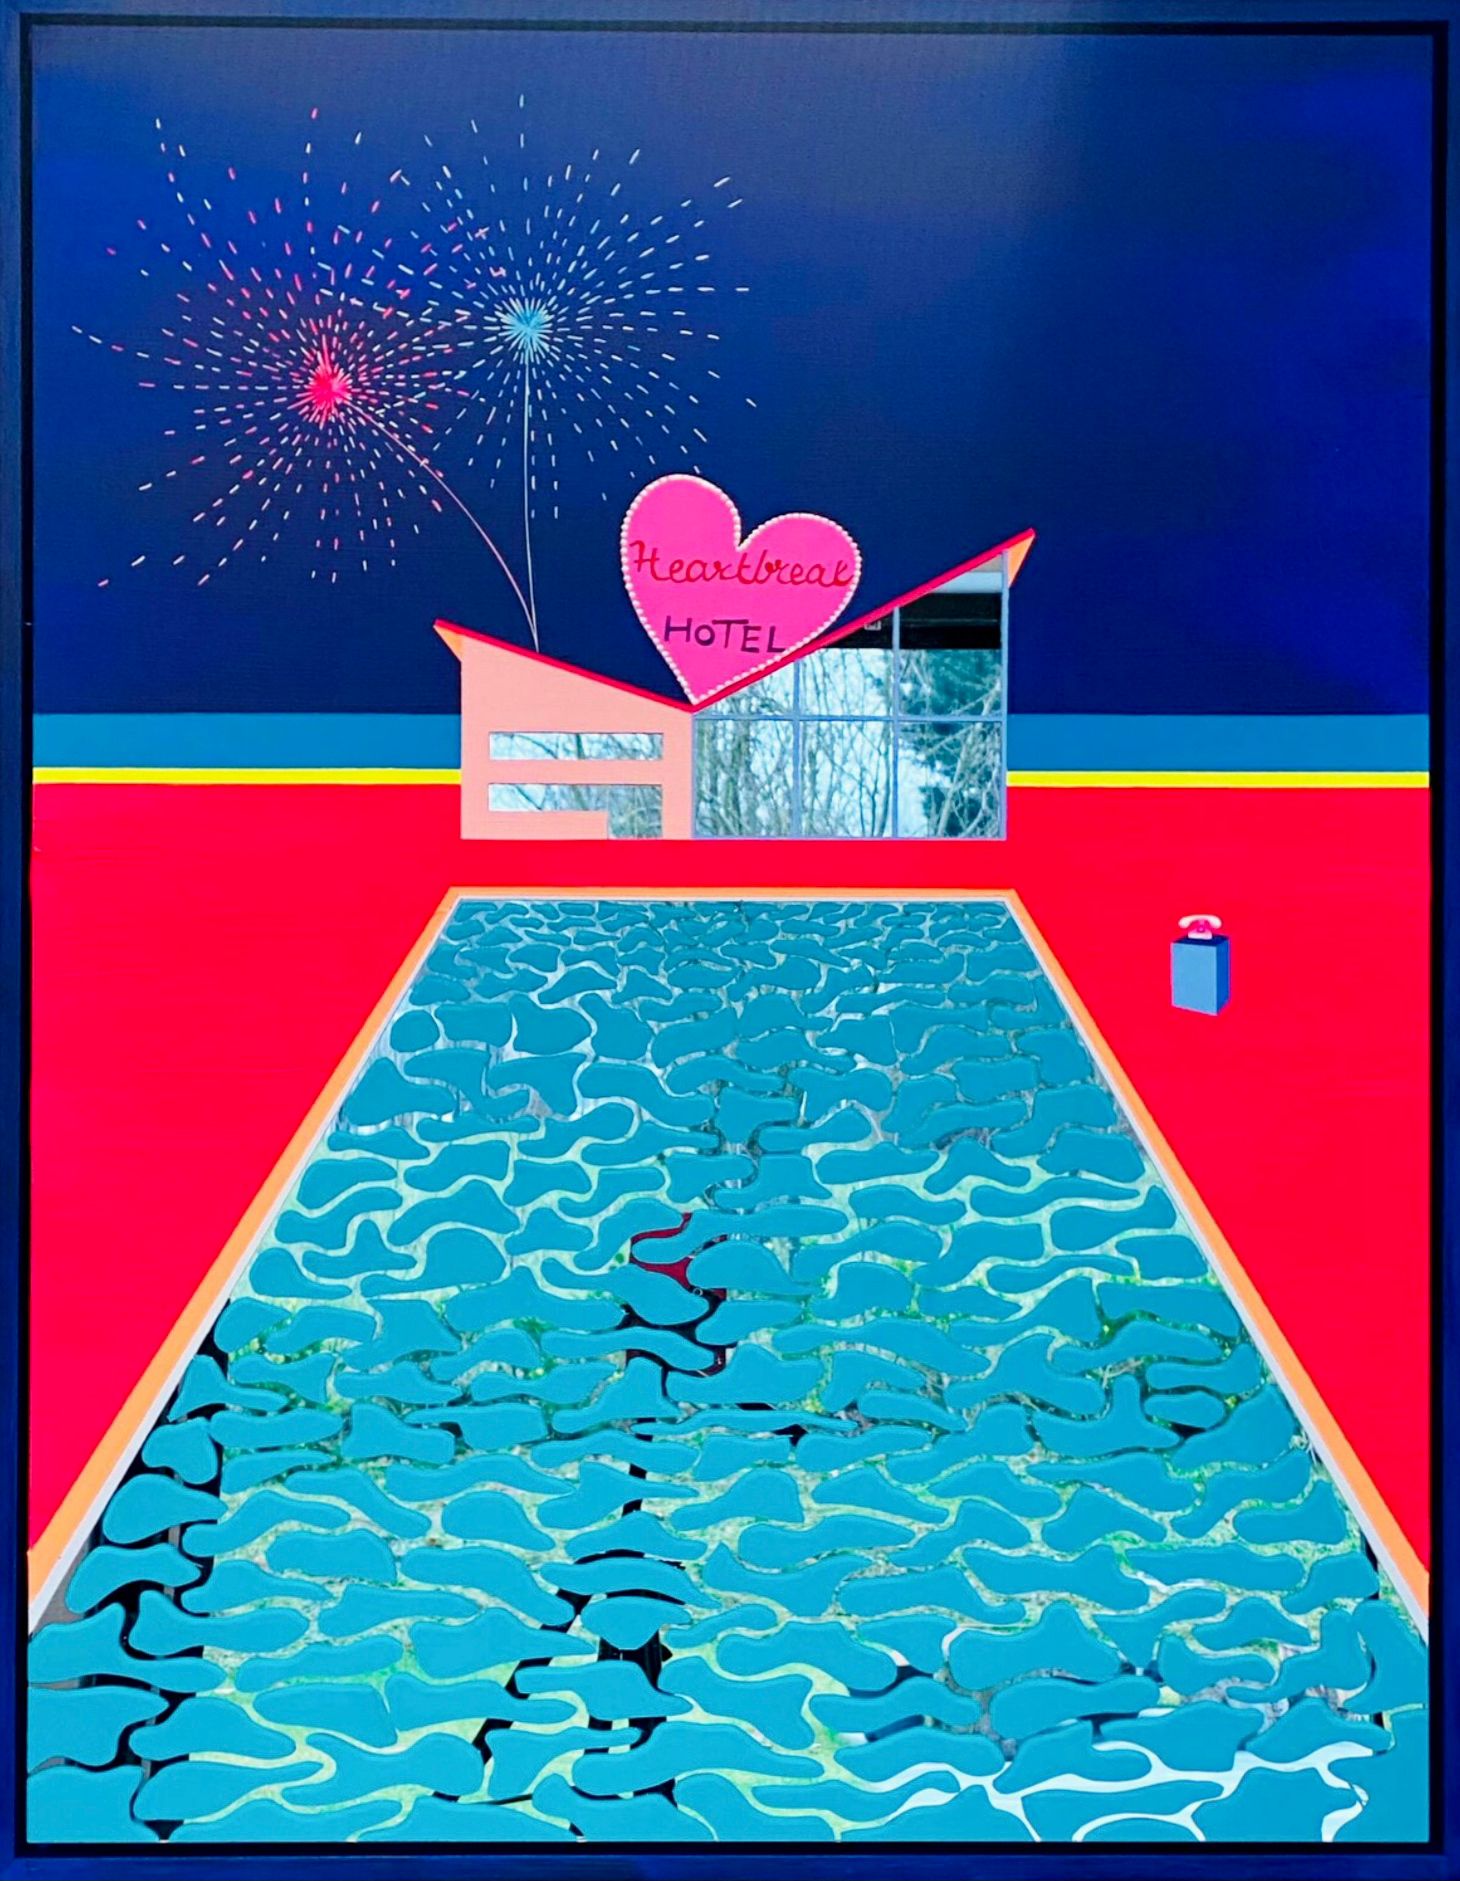 Isabelle Derecque, "Heartbreak hotel" Pintura colorista, en un lugar misteriosamente coloreado, habitado por criaturas marinas y pintado sobre espejos plexi en estilo pop-up con colores alegres y enérgicos. Visualizado a través de la geometría, las perspectivas, los contrastes y los reflejos.